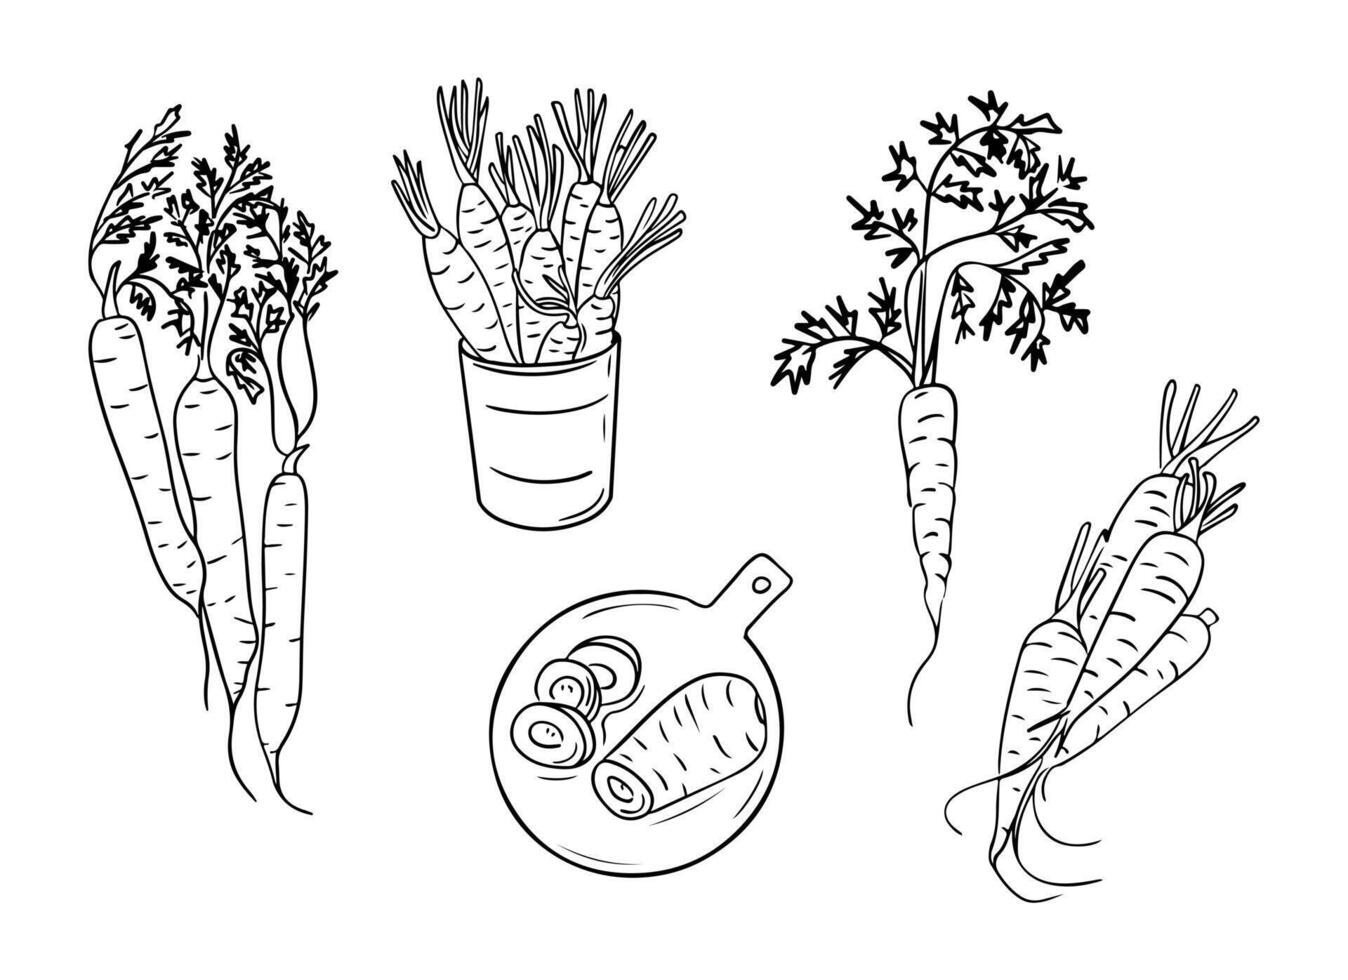 Hand gezeichnet skizzenhaft Zeichnungen von Möhren Gruppen. Gekritzel schwarz Kontur ganze Gemüse und Stück von, Trauben auf Weiß Hintergrund. Ideal zum Färbung Seiten, Tätowierung, Muster vektor